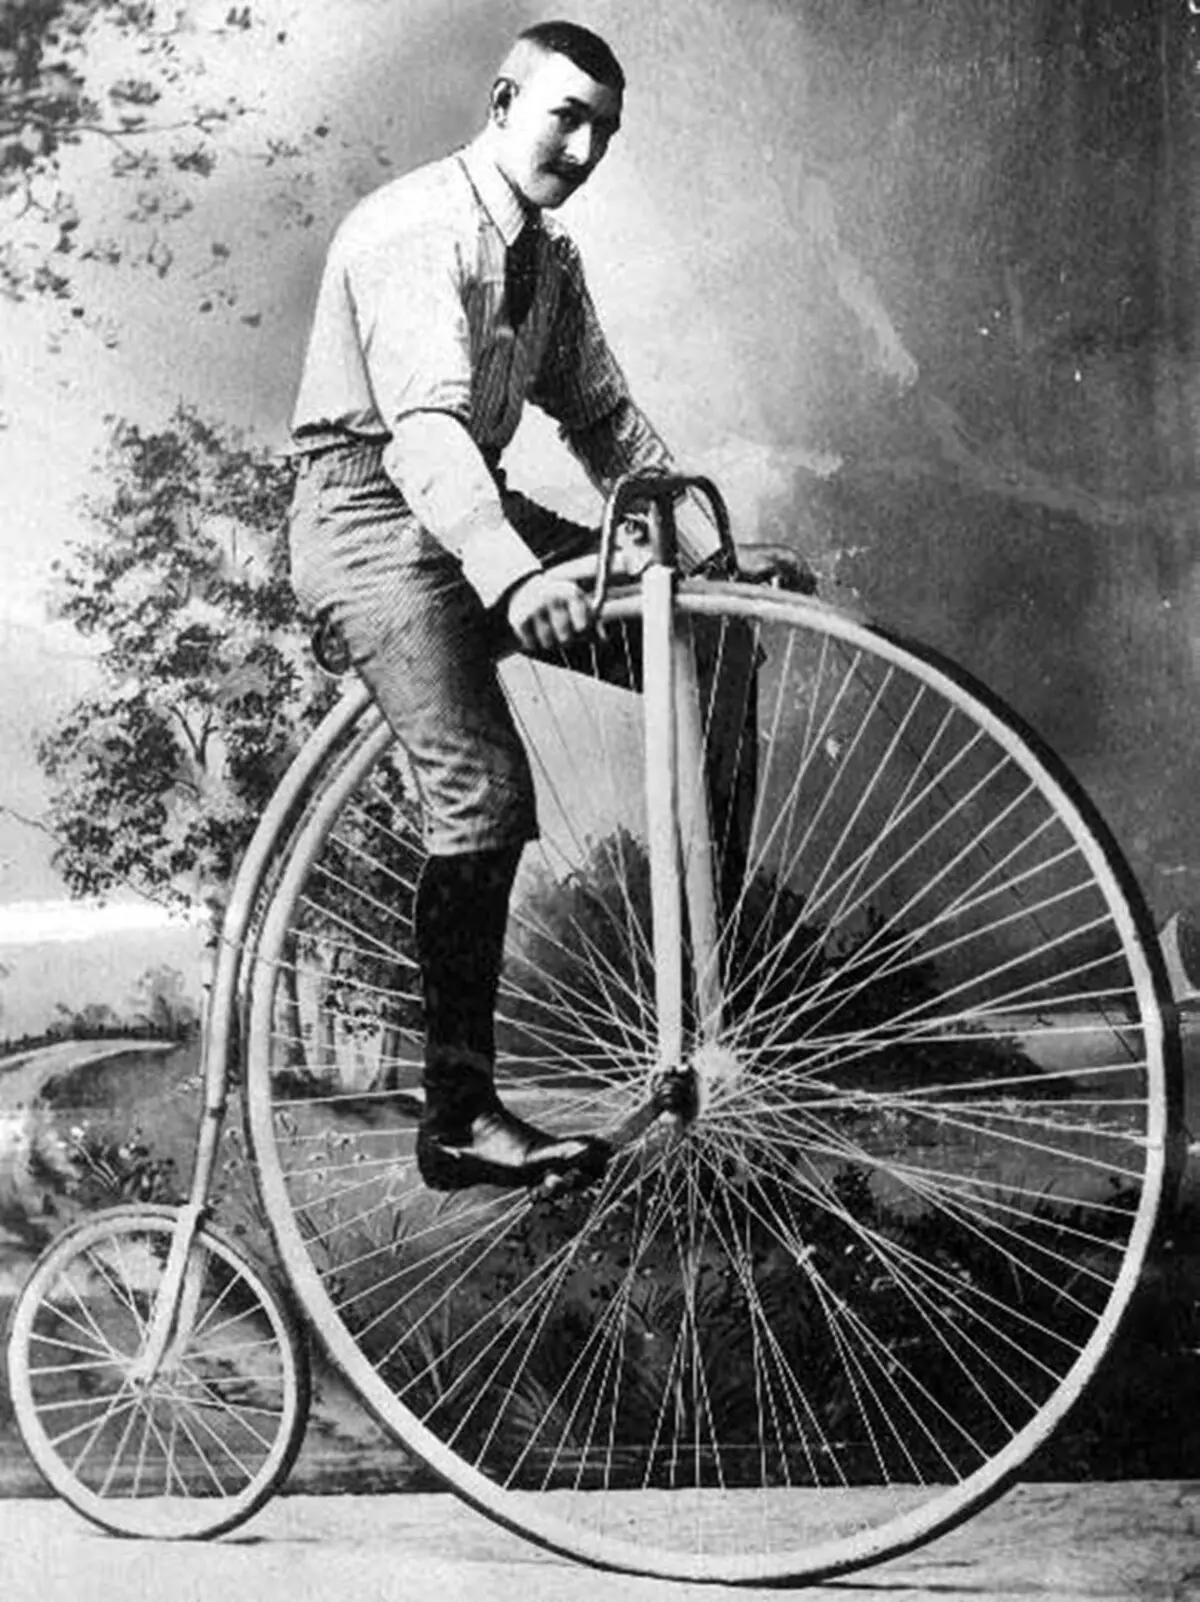 Monocycle: unicycle (ýeke-täk bike) ady näme? elektrik modelleri Umumy. Nädip münmezden öwrenmek üçin? 26188_6